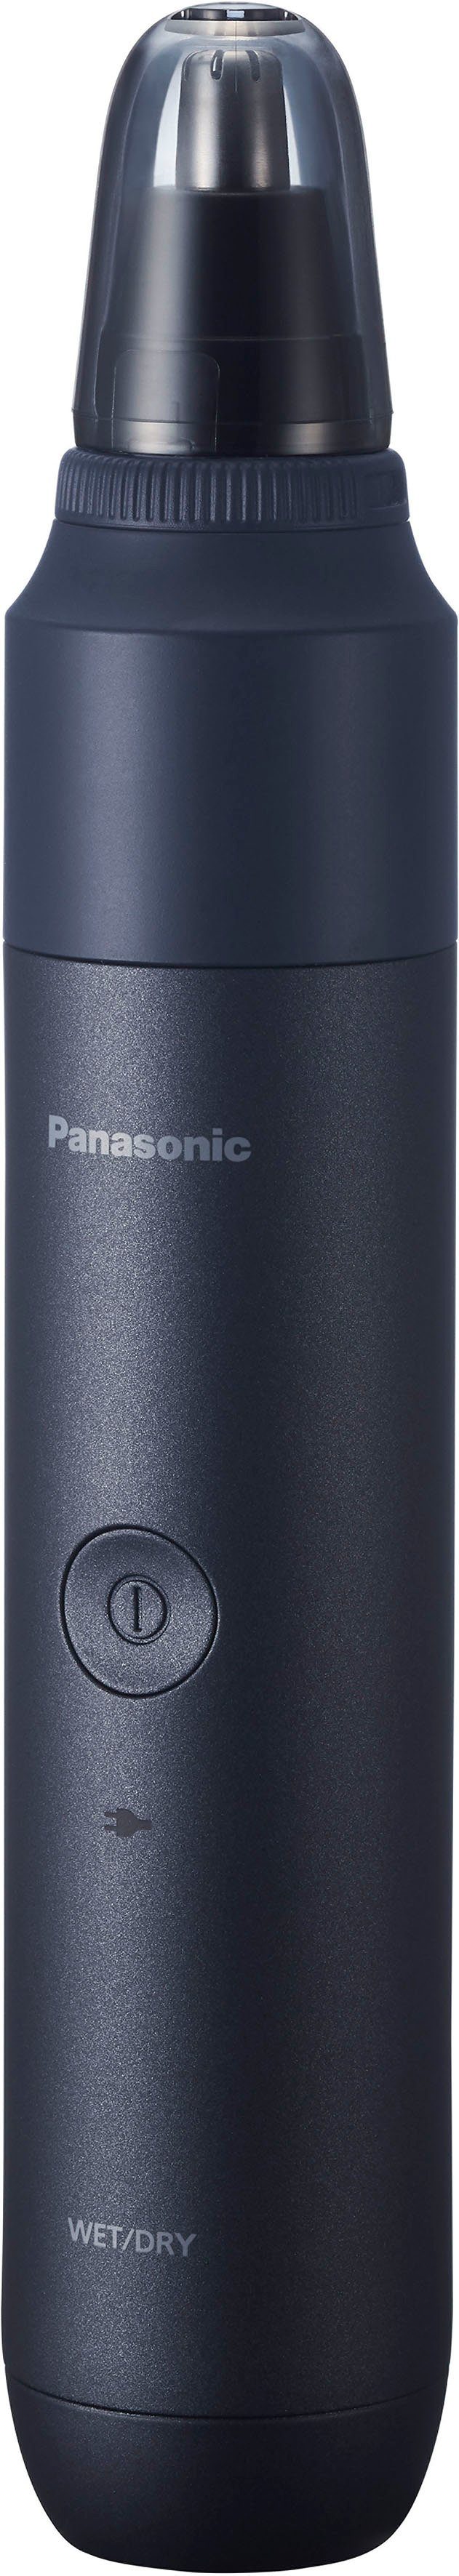 Multishape Aufsatz Nasen- Panasonic Nasenhaarschneider Ohrhaartrimmeraufsatz und